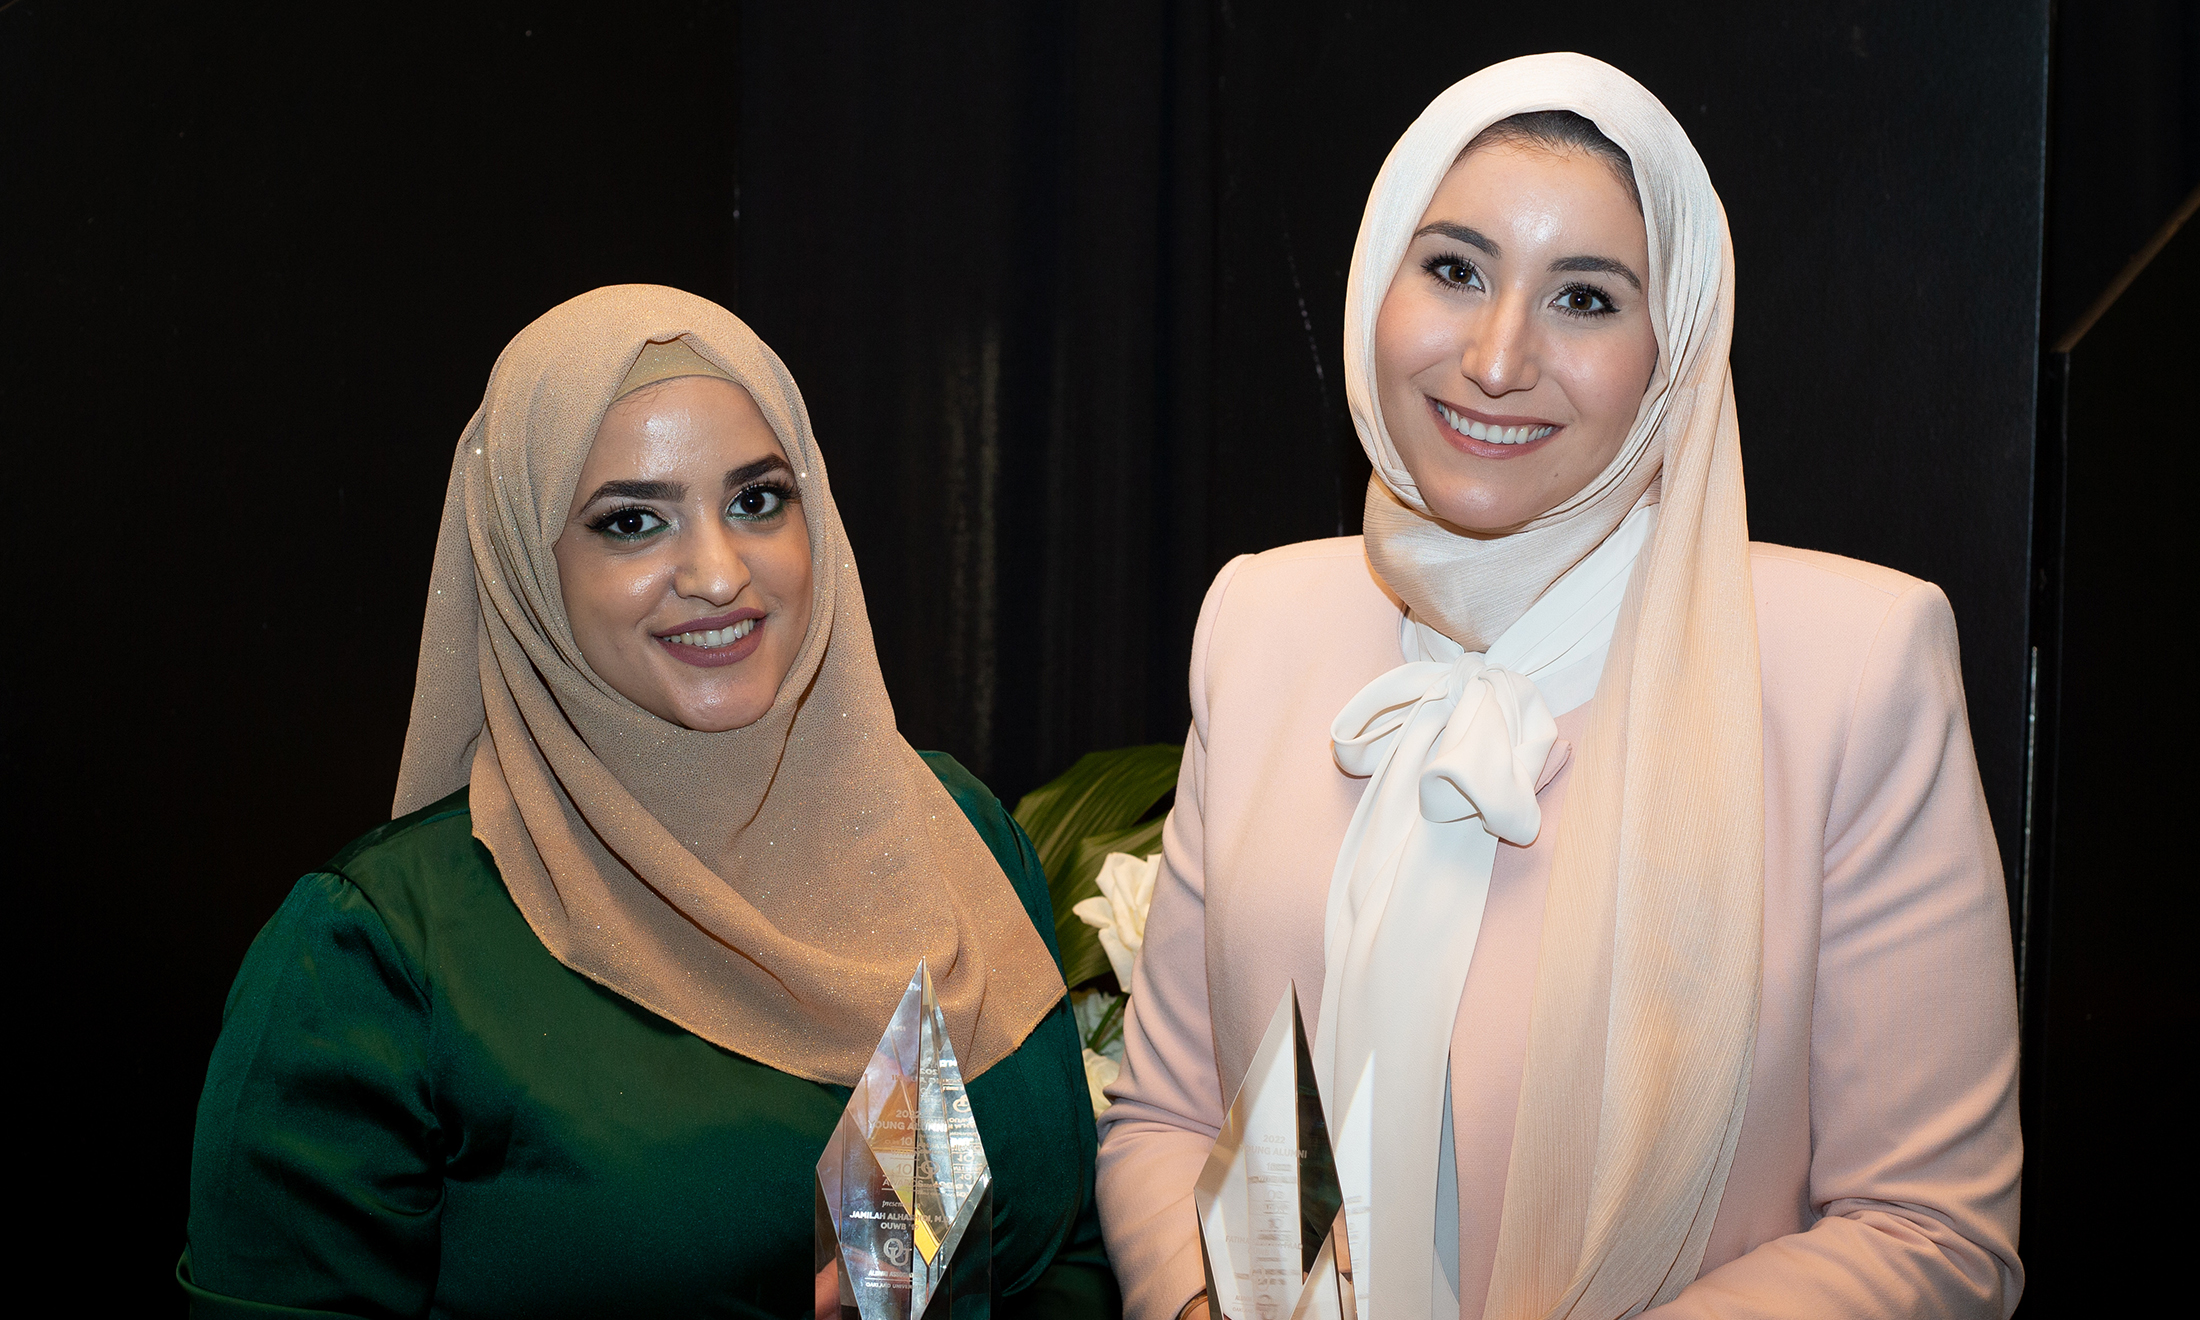 An image of Jamilah Alhashidi and Fatima Fahs